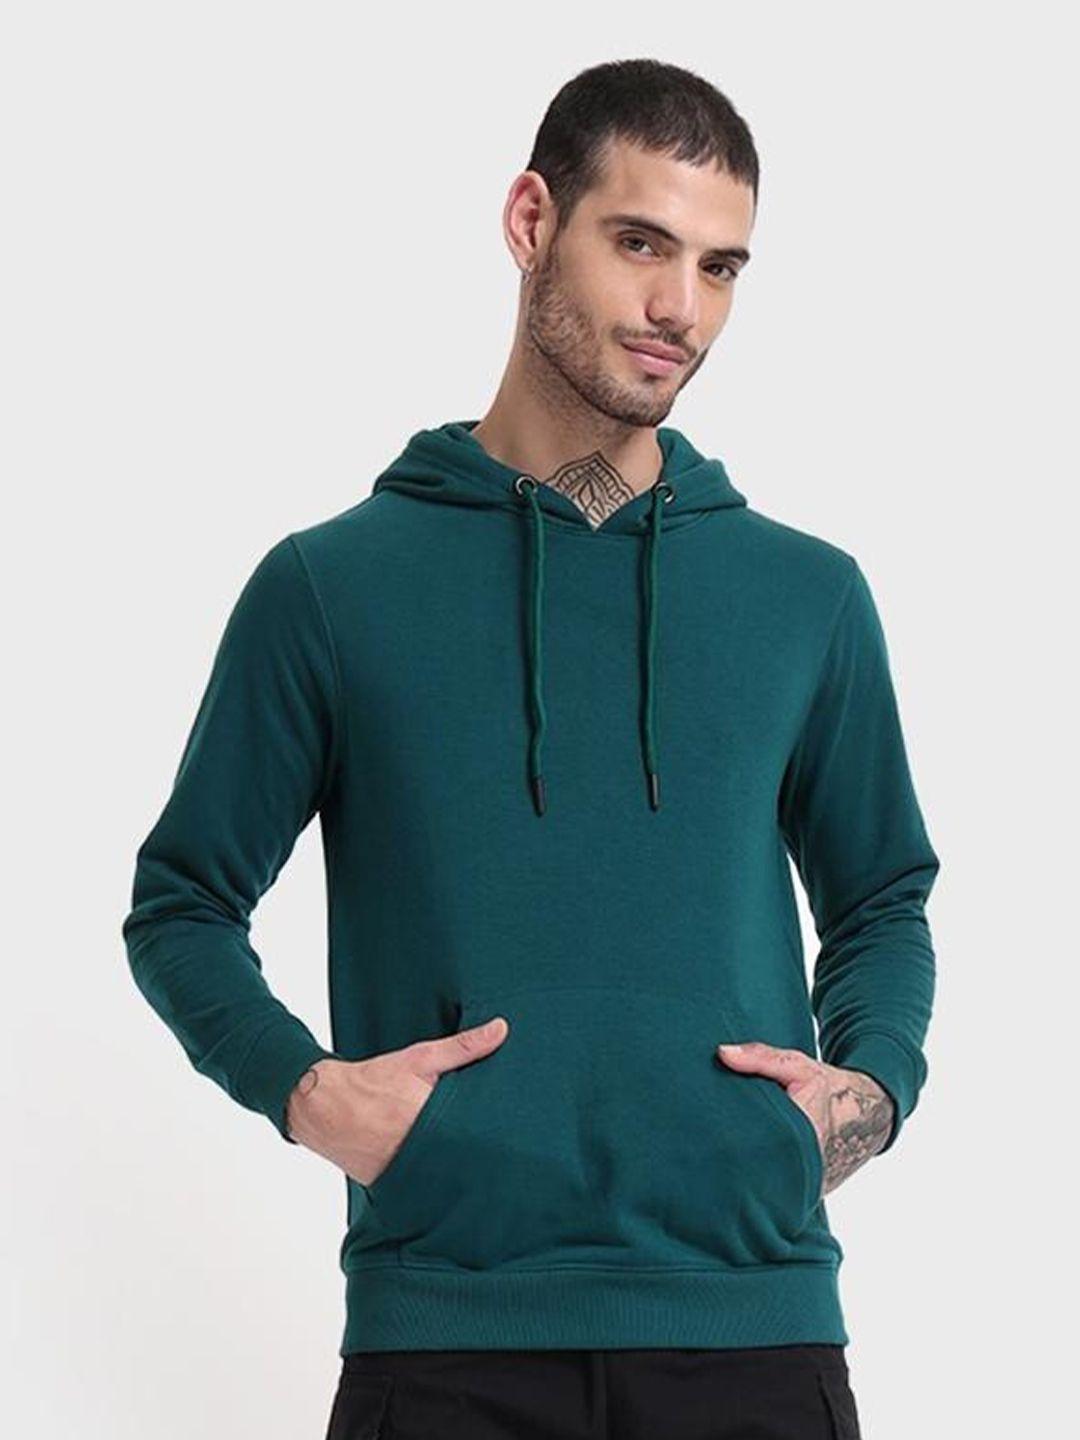 bewakoof-men-teal-hooded-cotton-sweatshirt